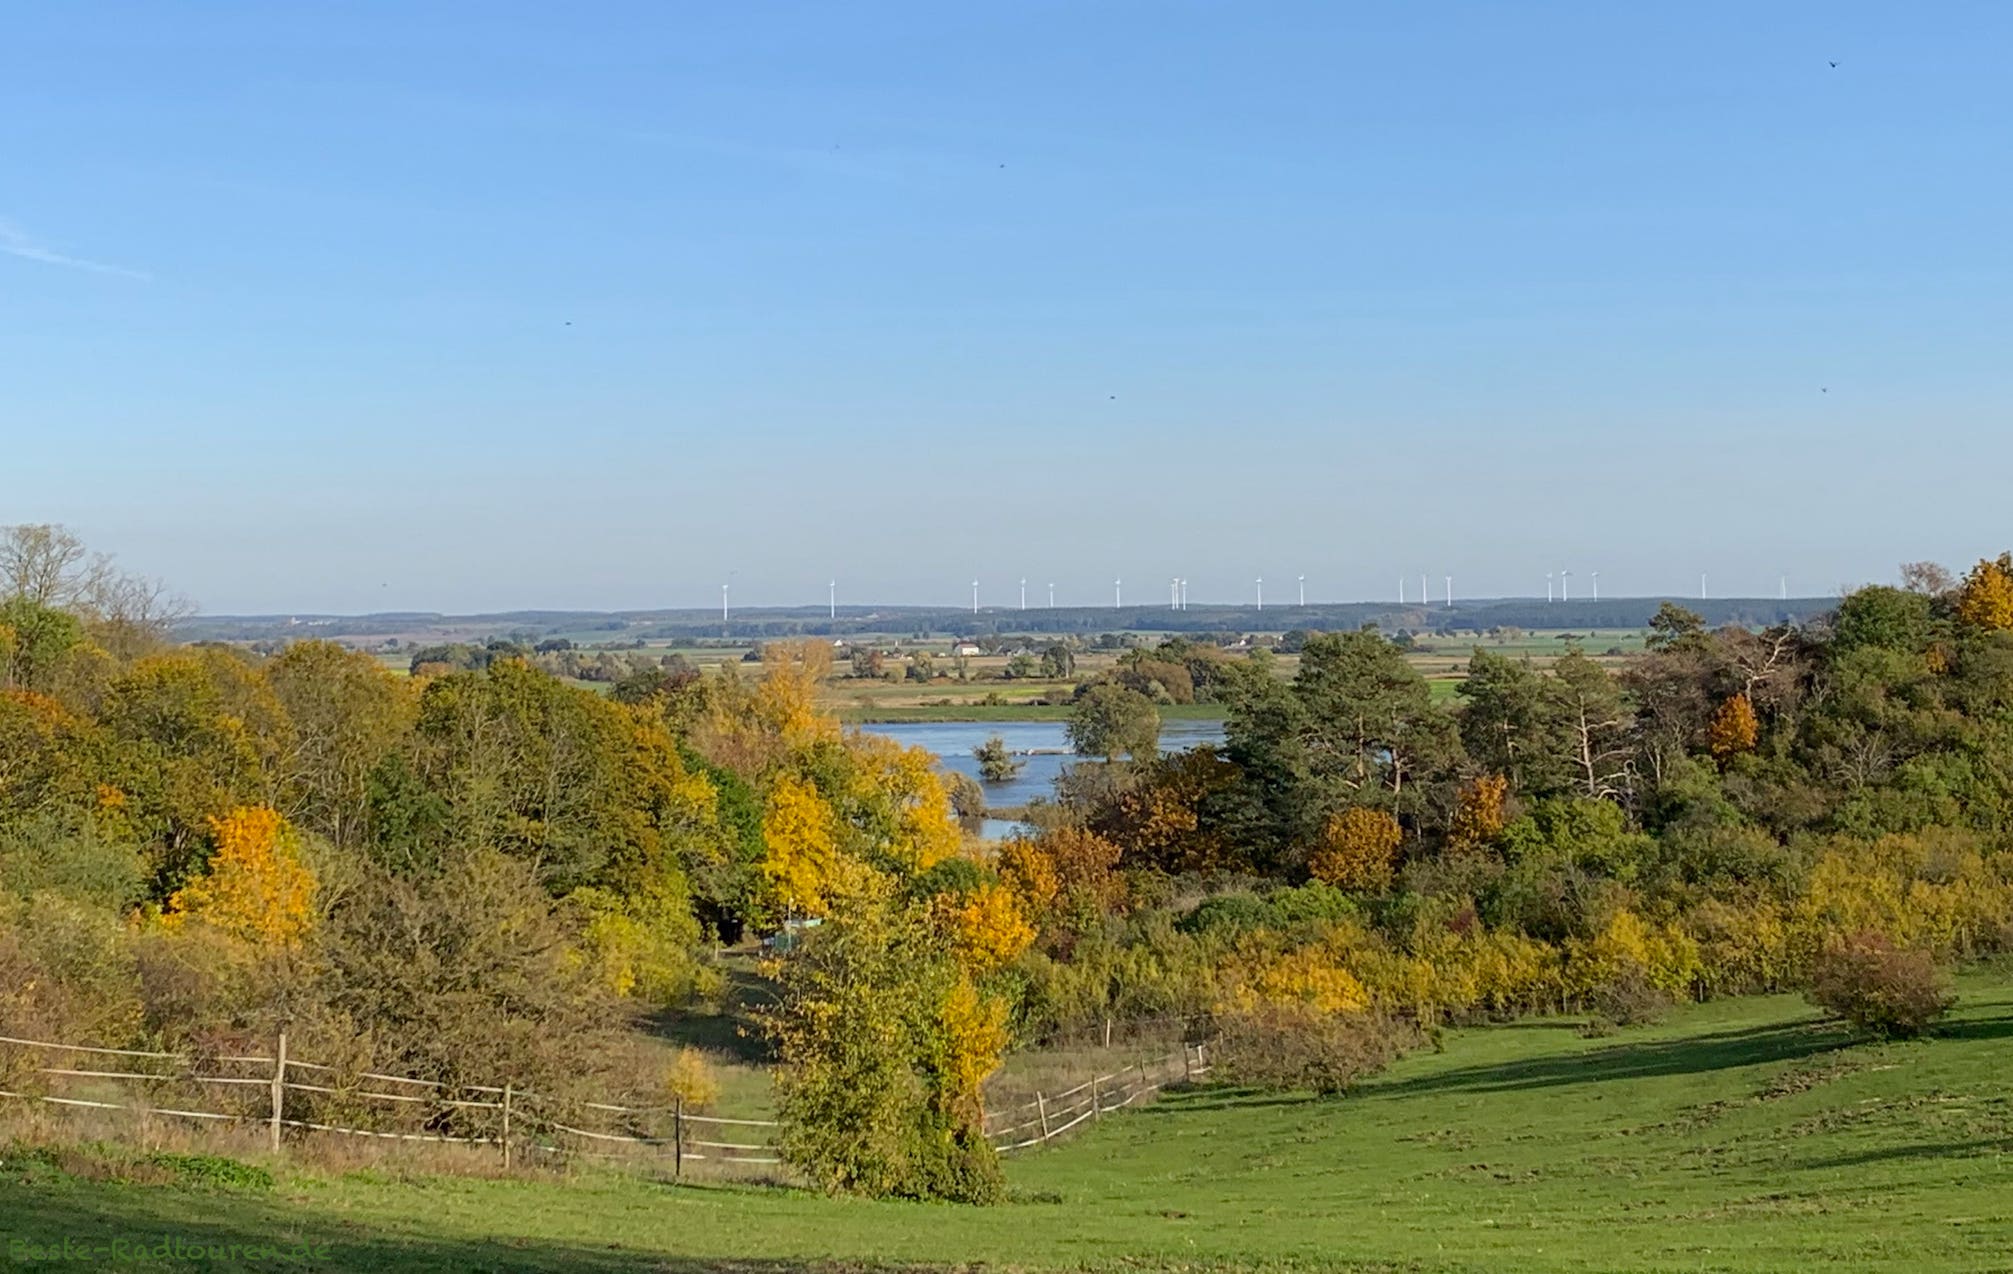 Oberhalb von Lebus, Foto vom Oderradweg aus: Blick auf die Oder-Landschaft im Herbst